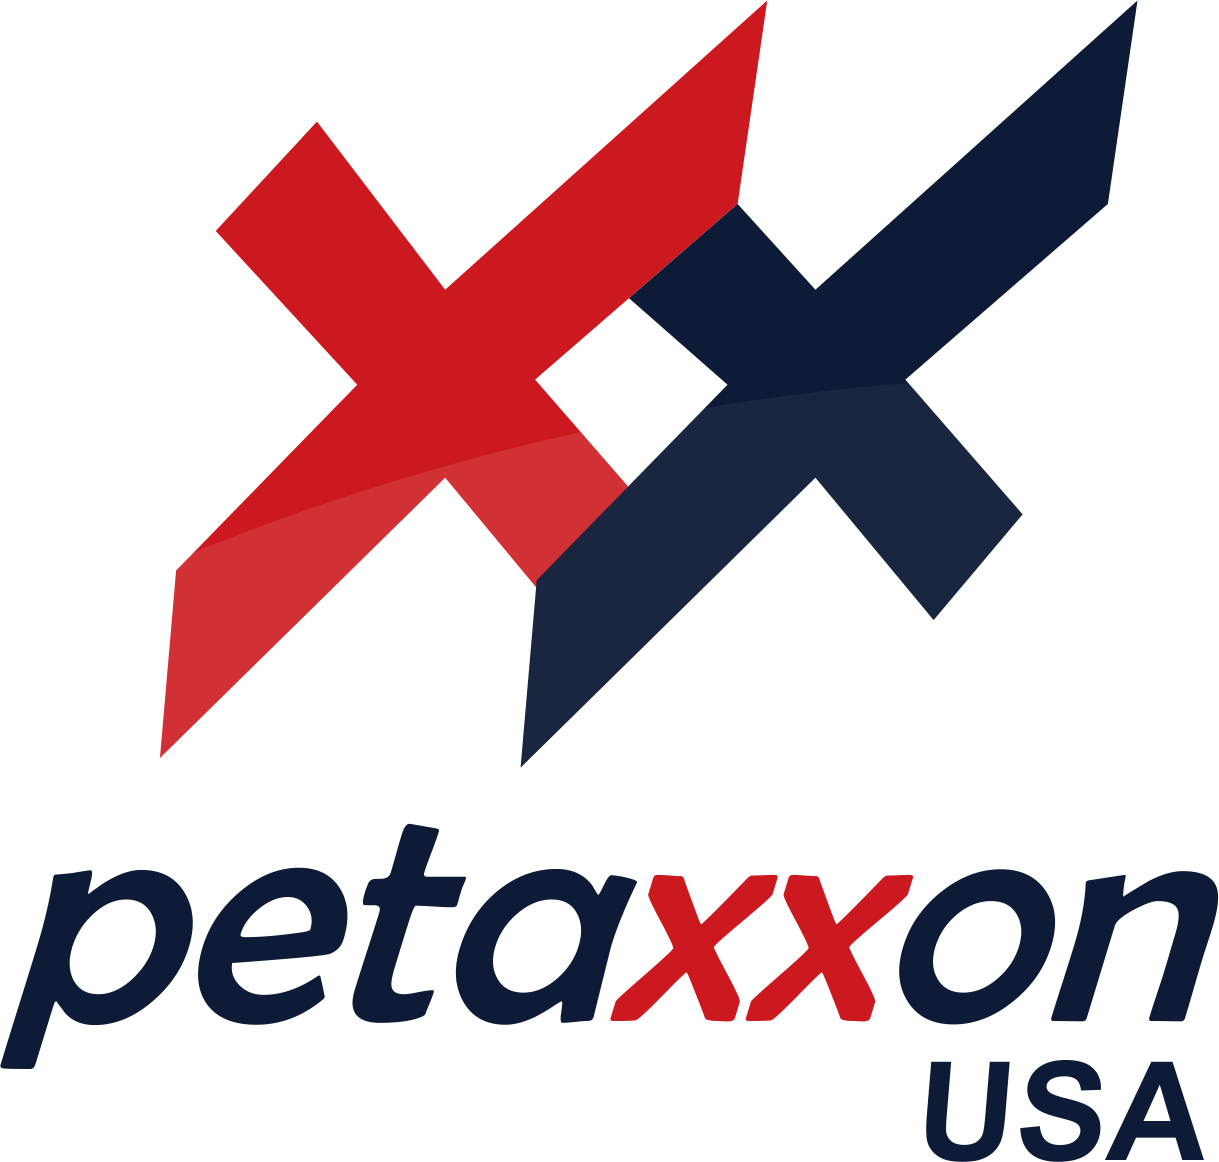 Petaxxon logo